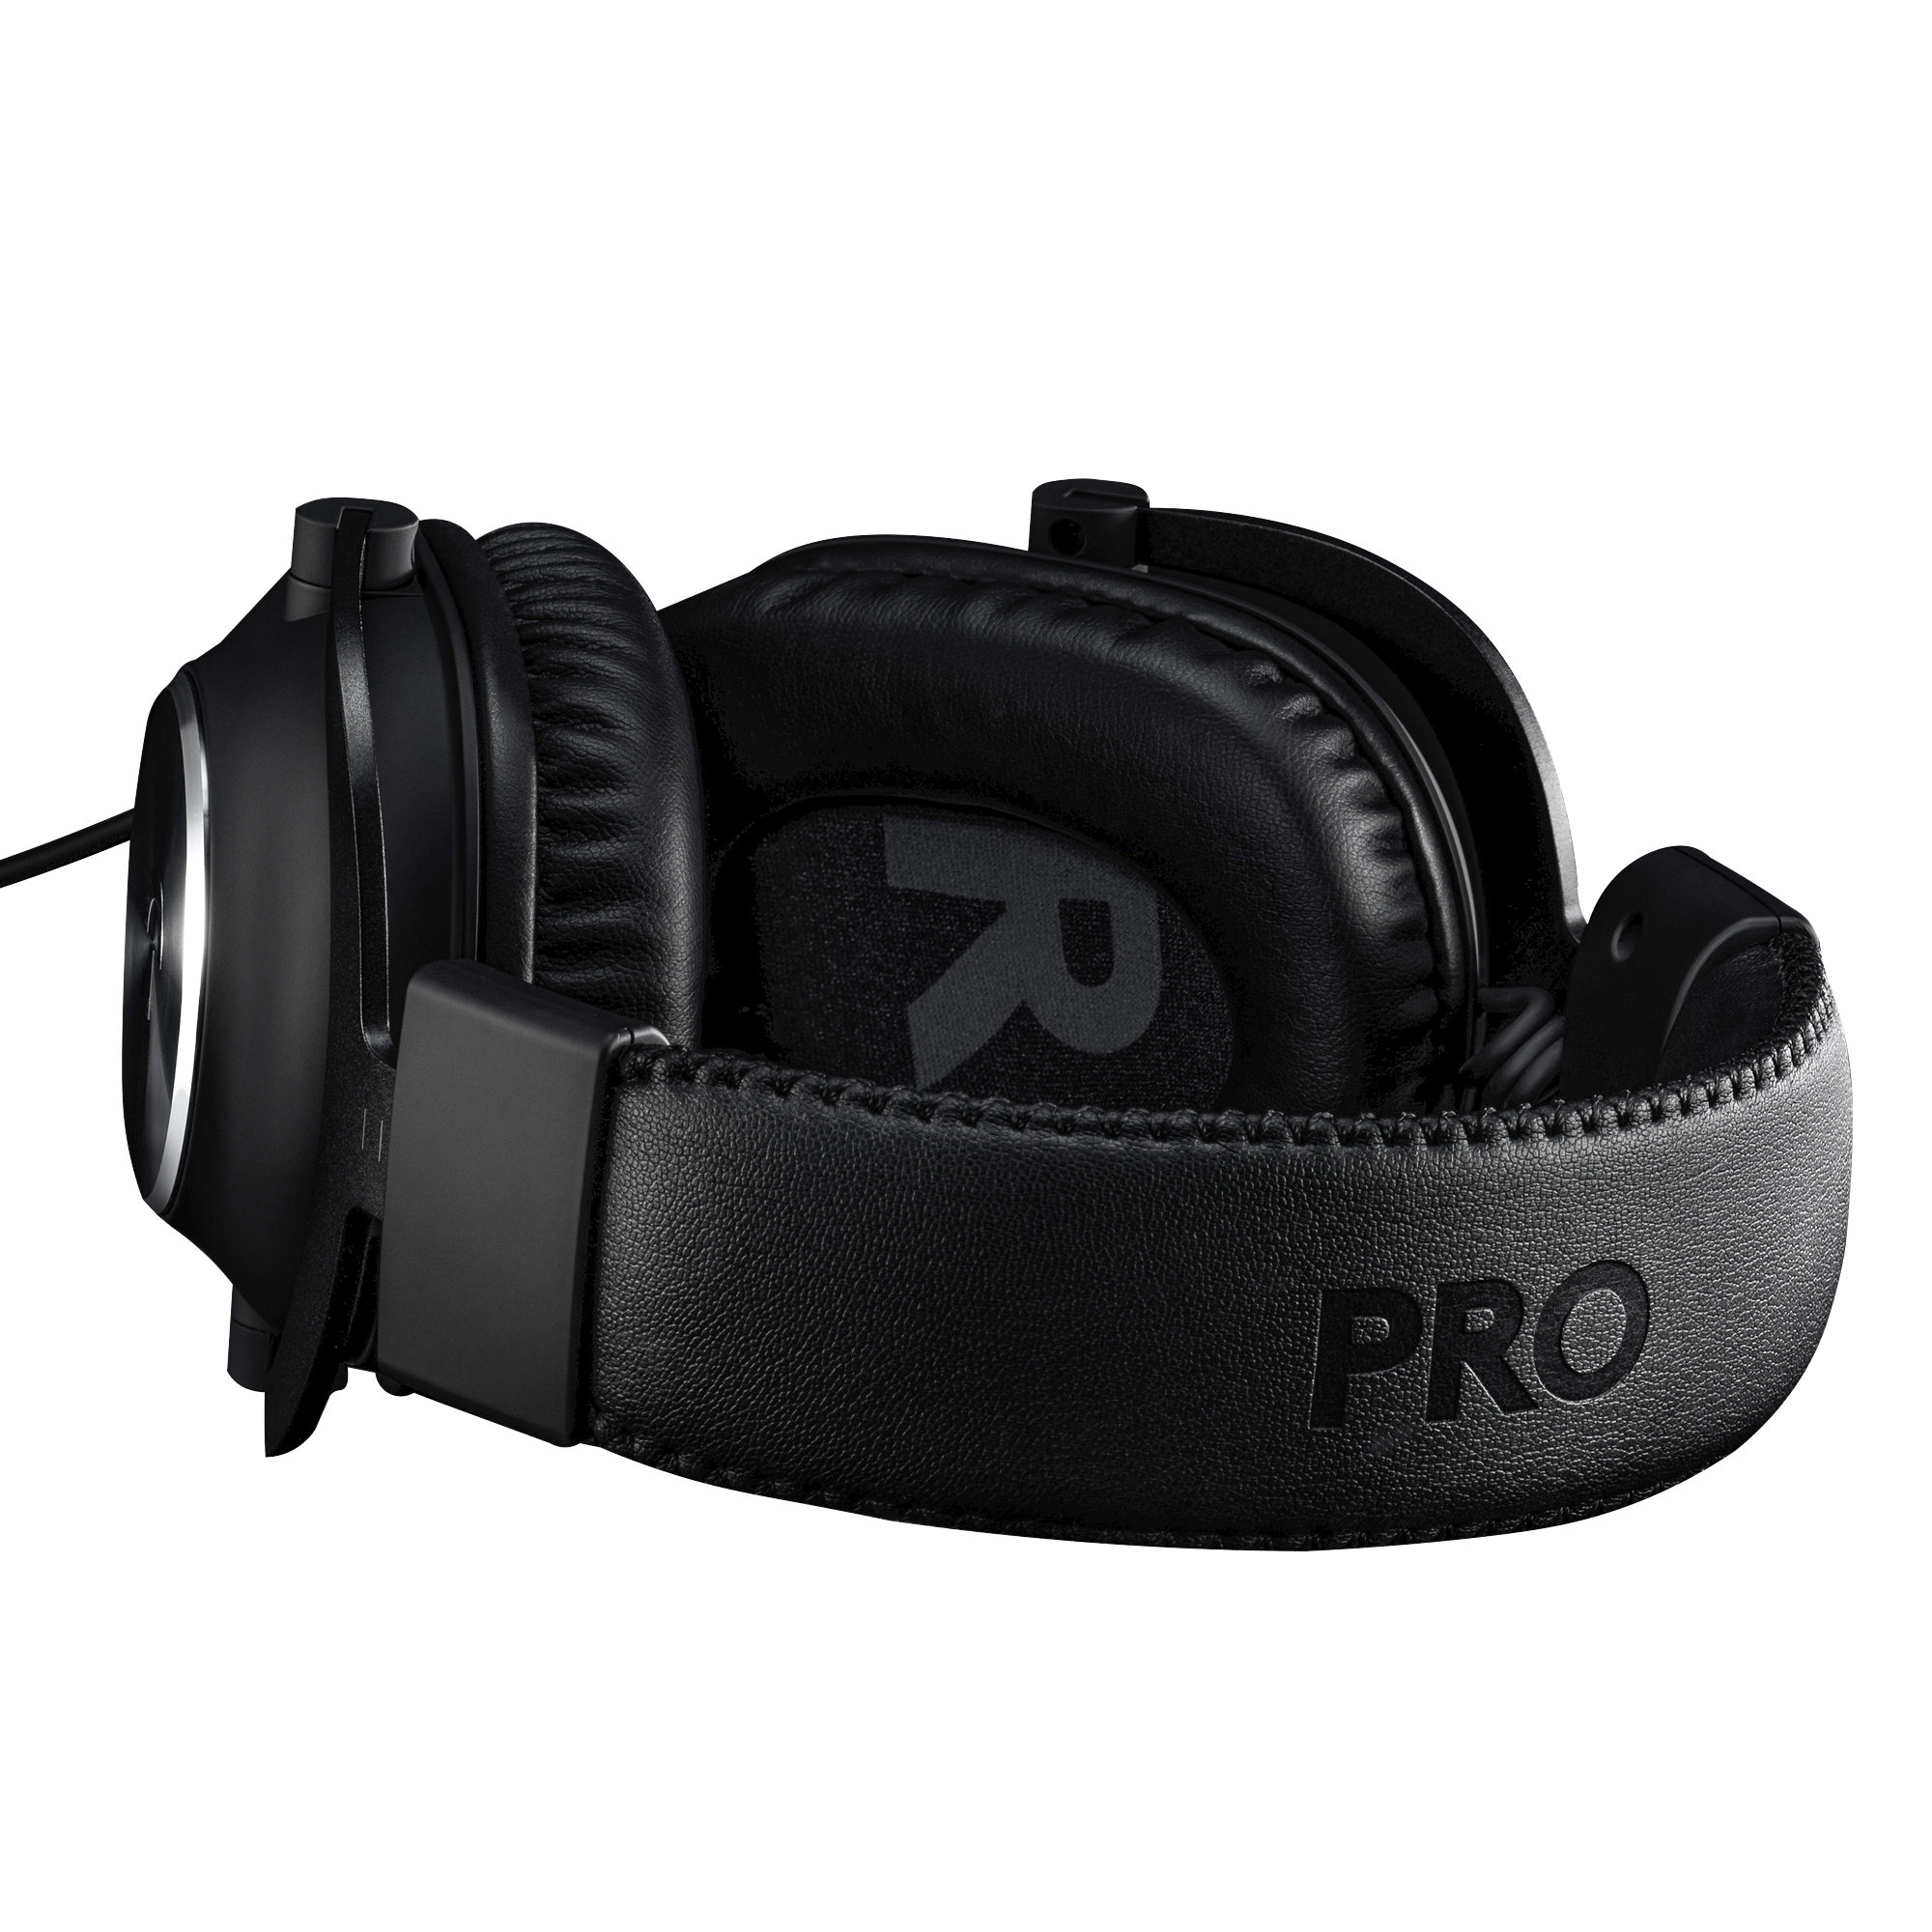 Купить наушники g pro. Наушники Logitech g Pro x. Headset: Logitech g Pro x (wired). Logitech Pro New Black 981-000812. Наушники игровые USB Logitech g Pro (981-000812.